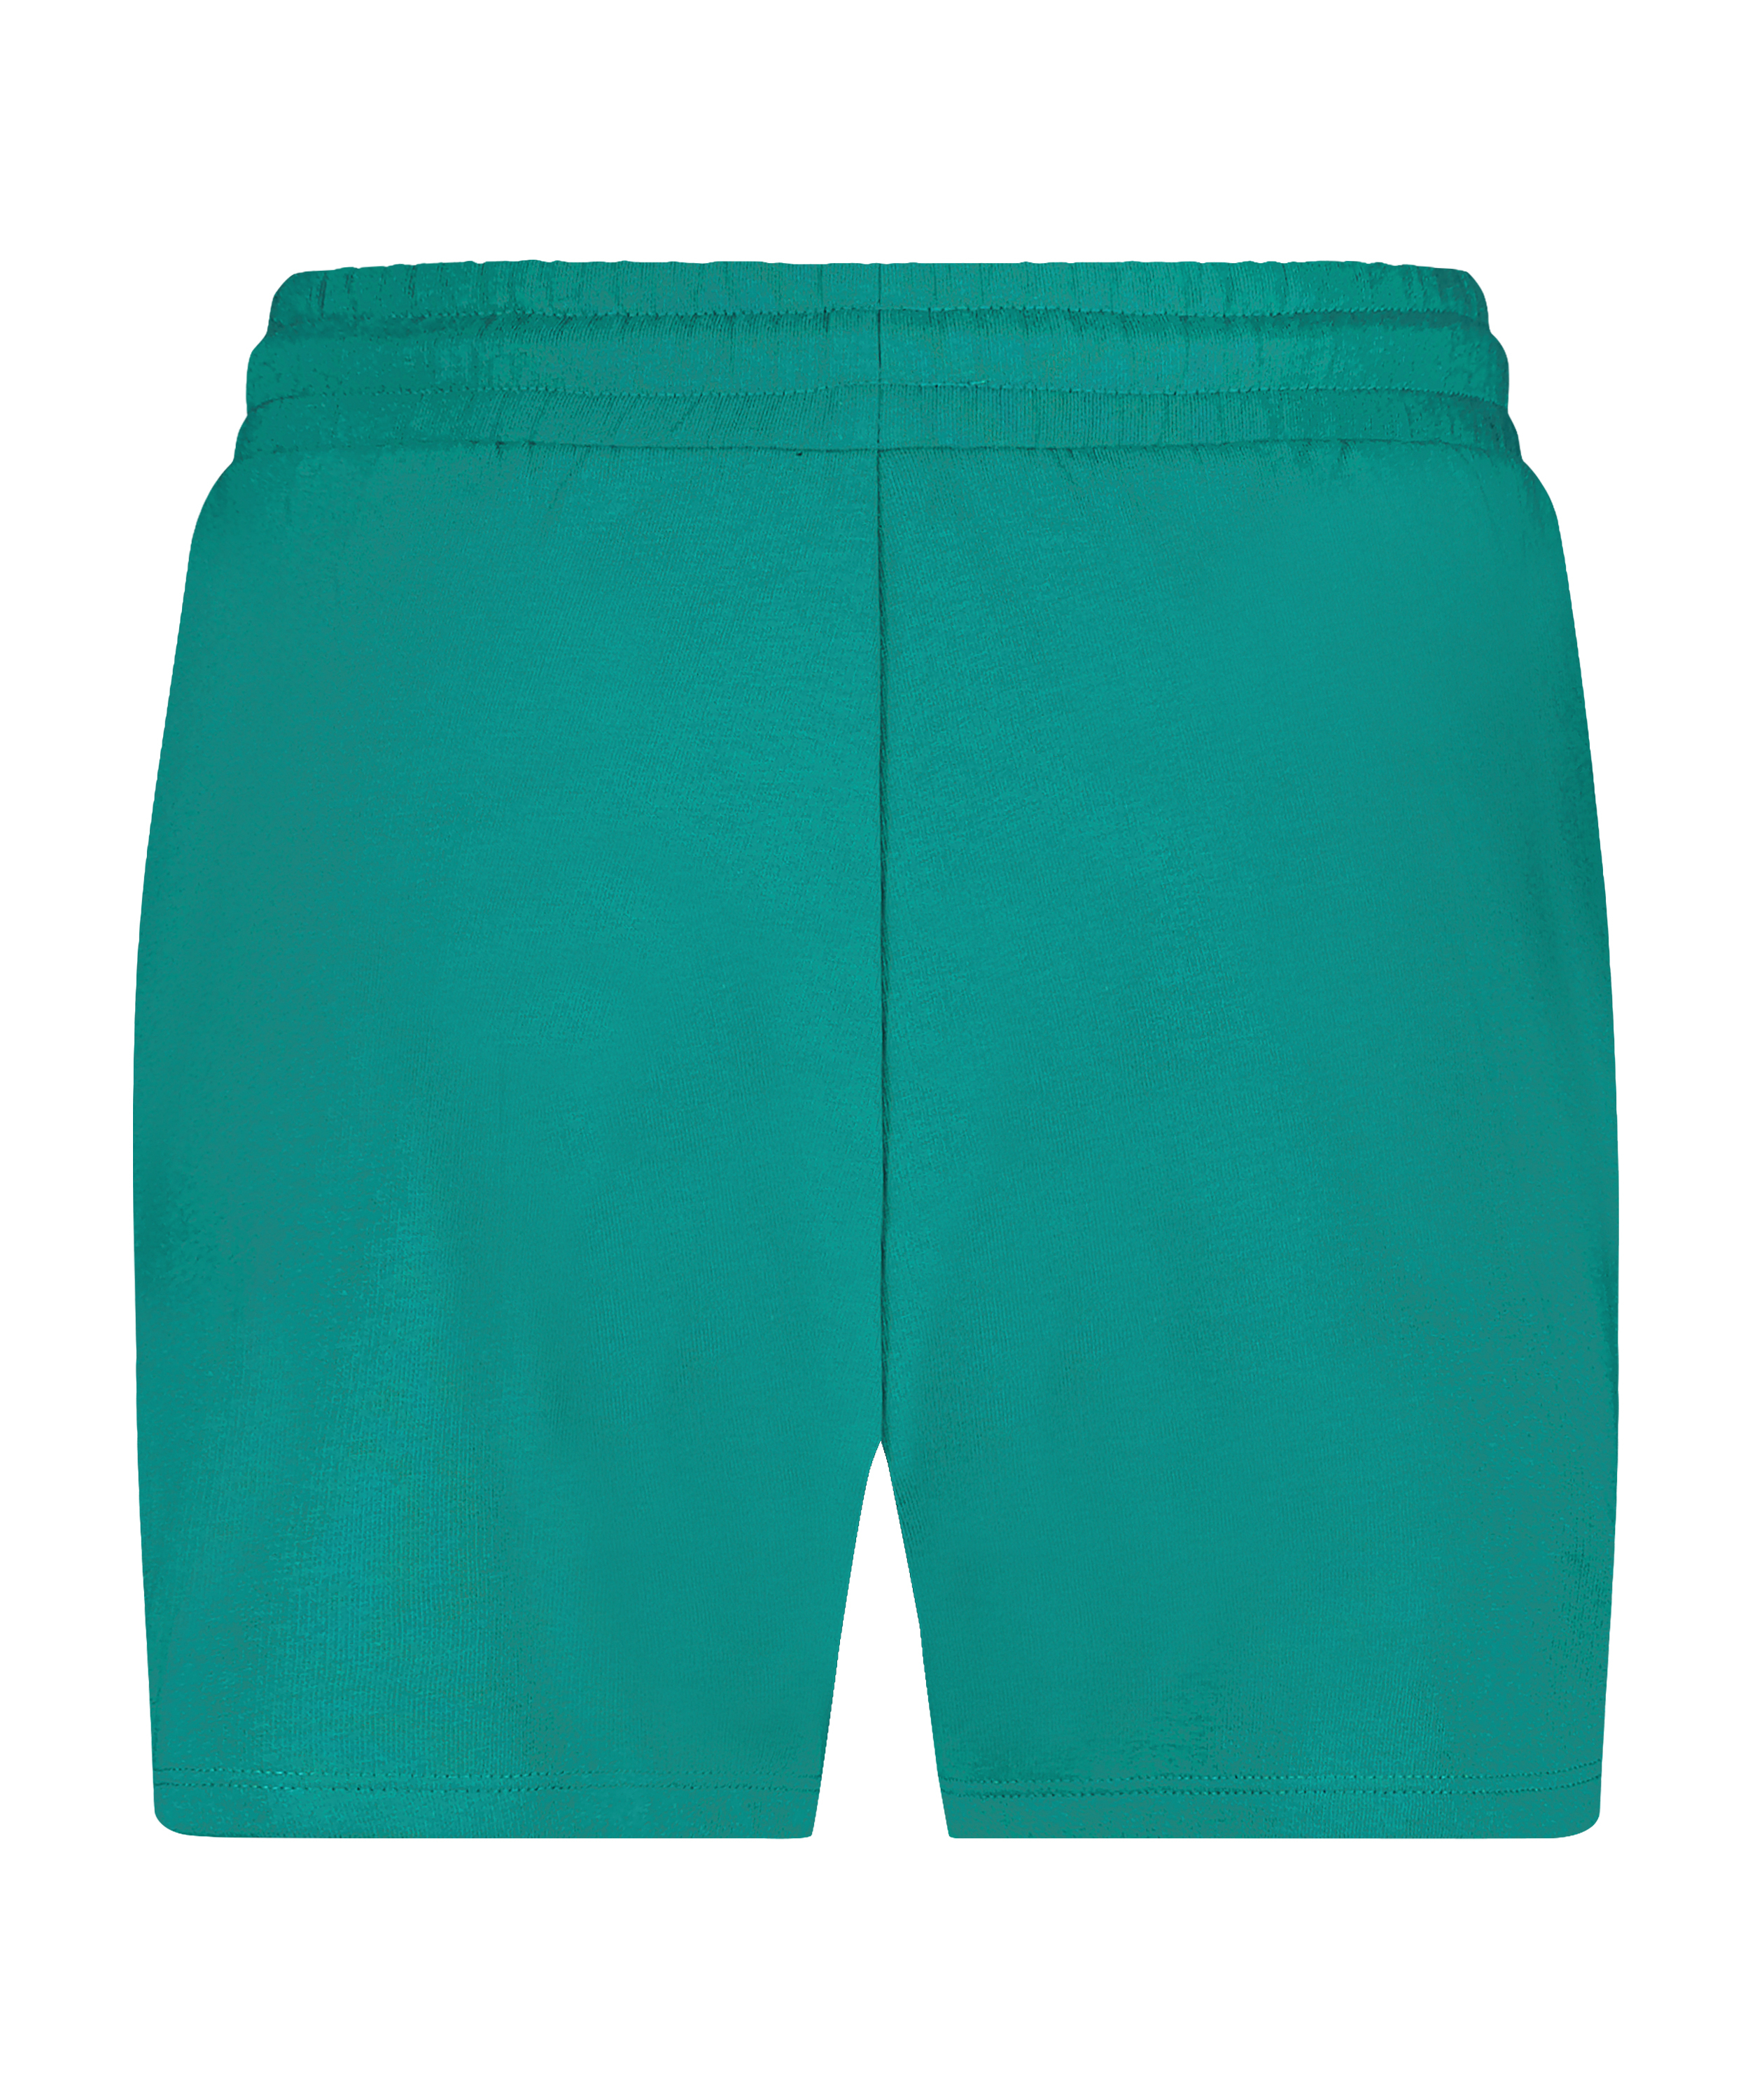 Sweat Shorts, Green, main